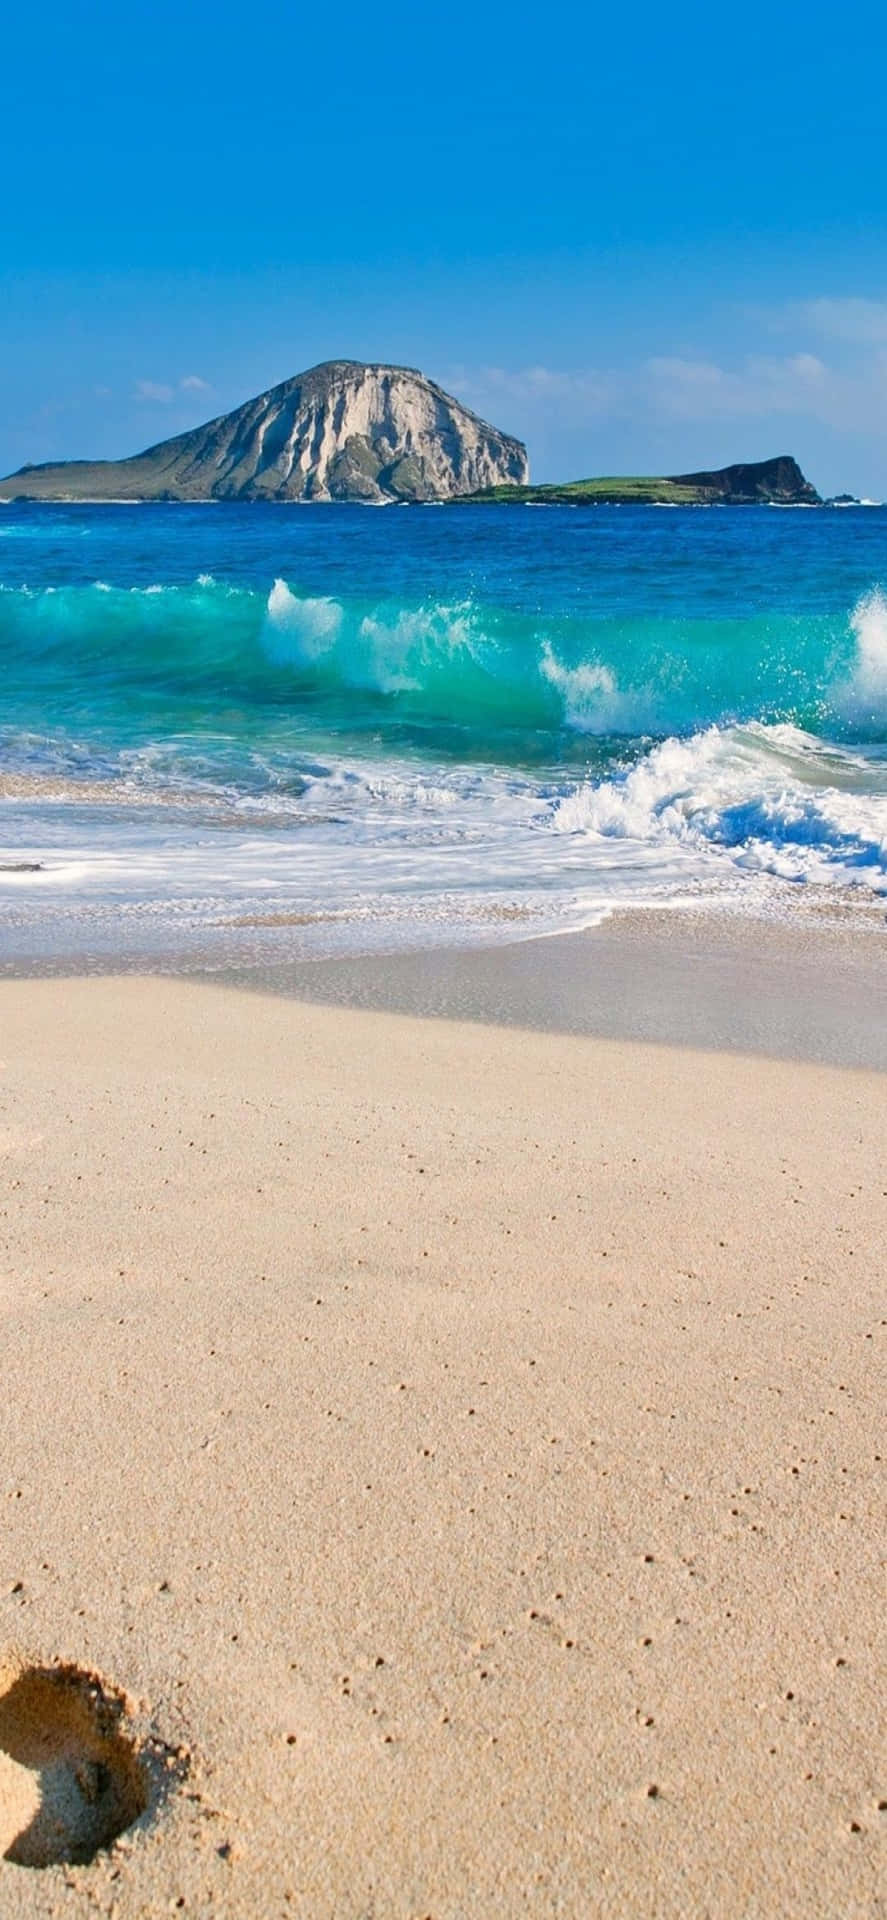 Iphonexs Bakgrundsbild Från Hawaii-stranden.